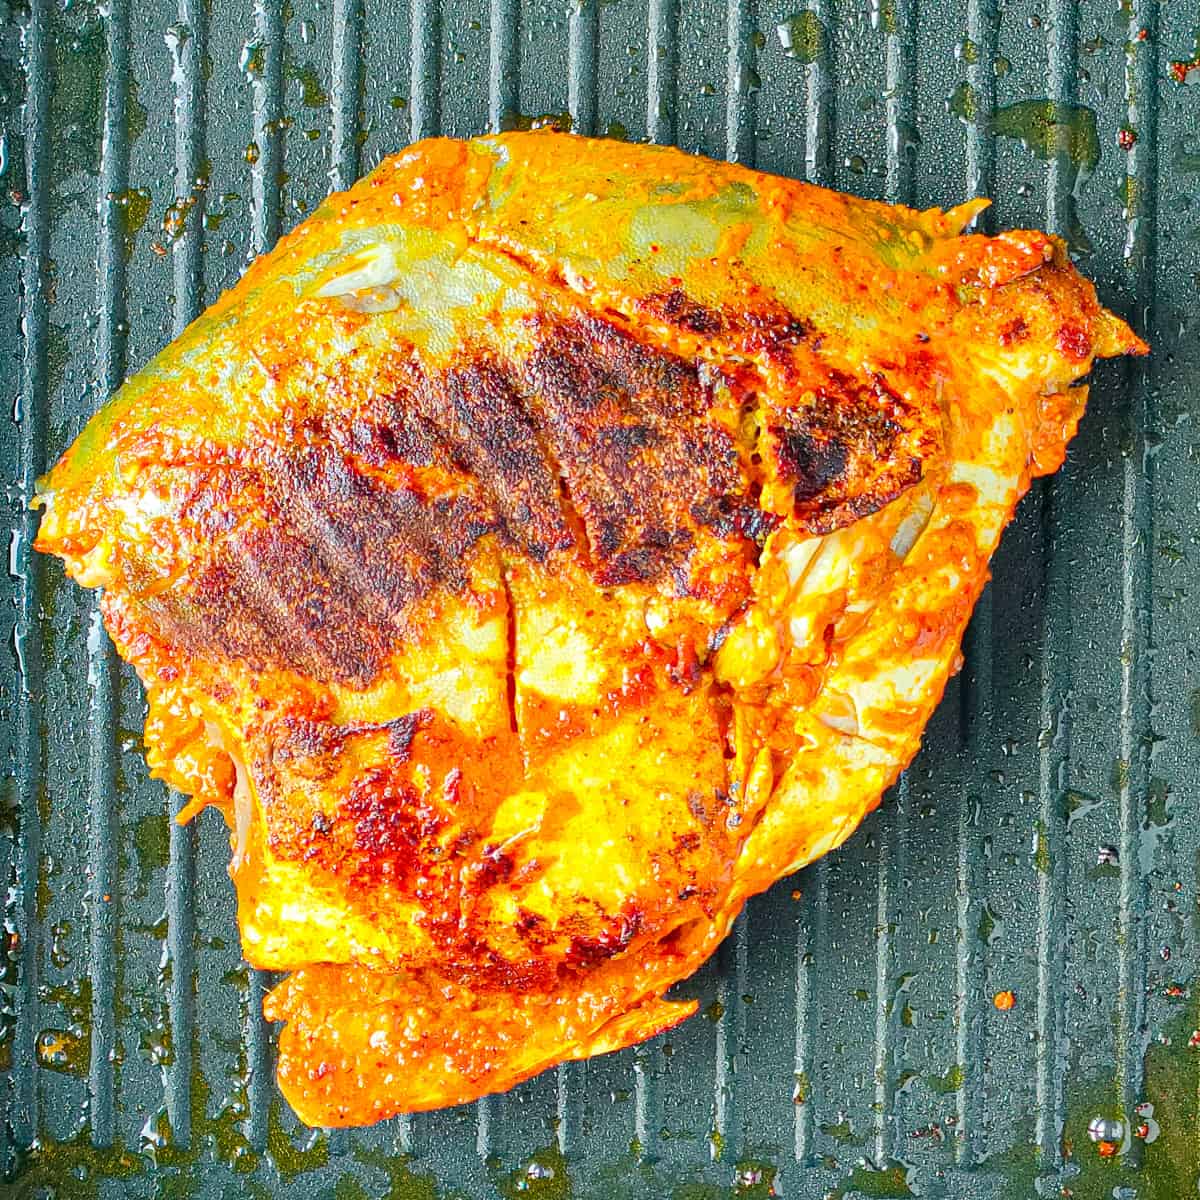 Browned fish tandoori on a grill pan.